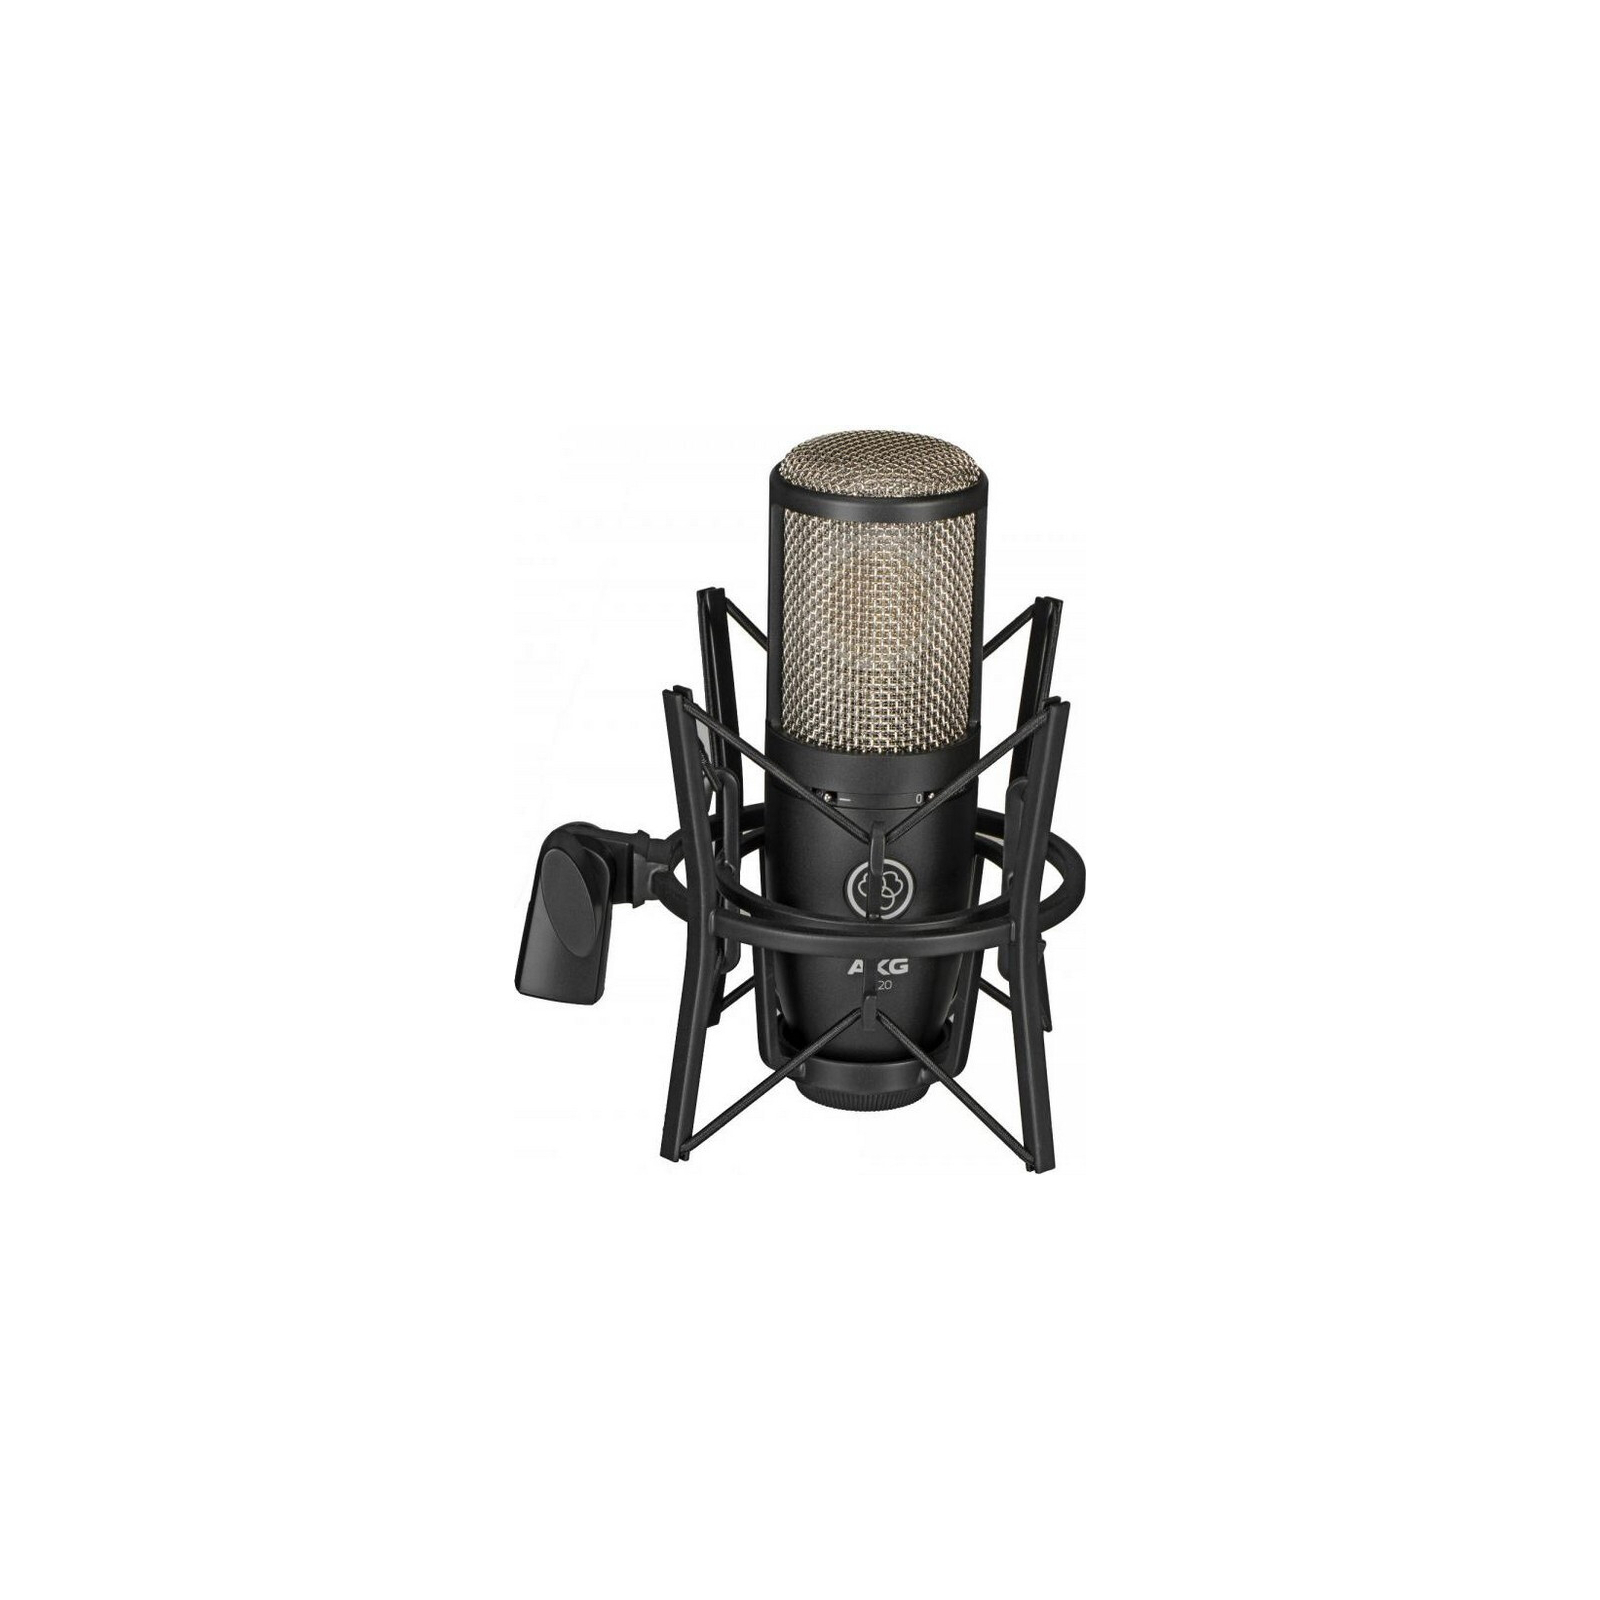 Микрофон AKG P220 Black (3101H00420) изображение 4